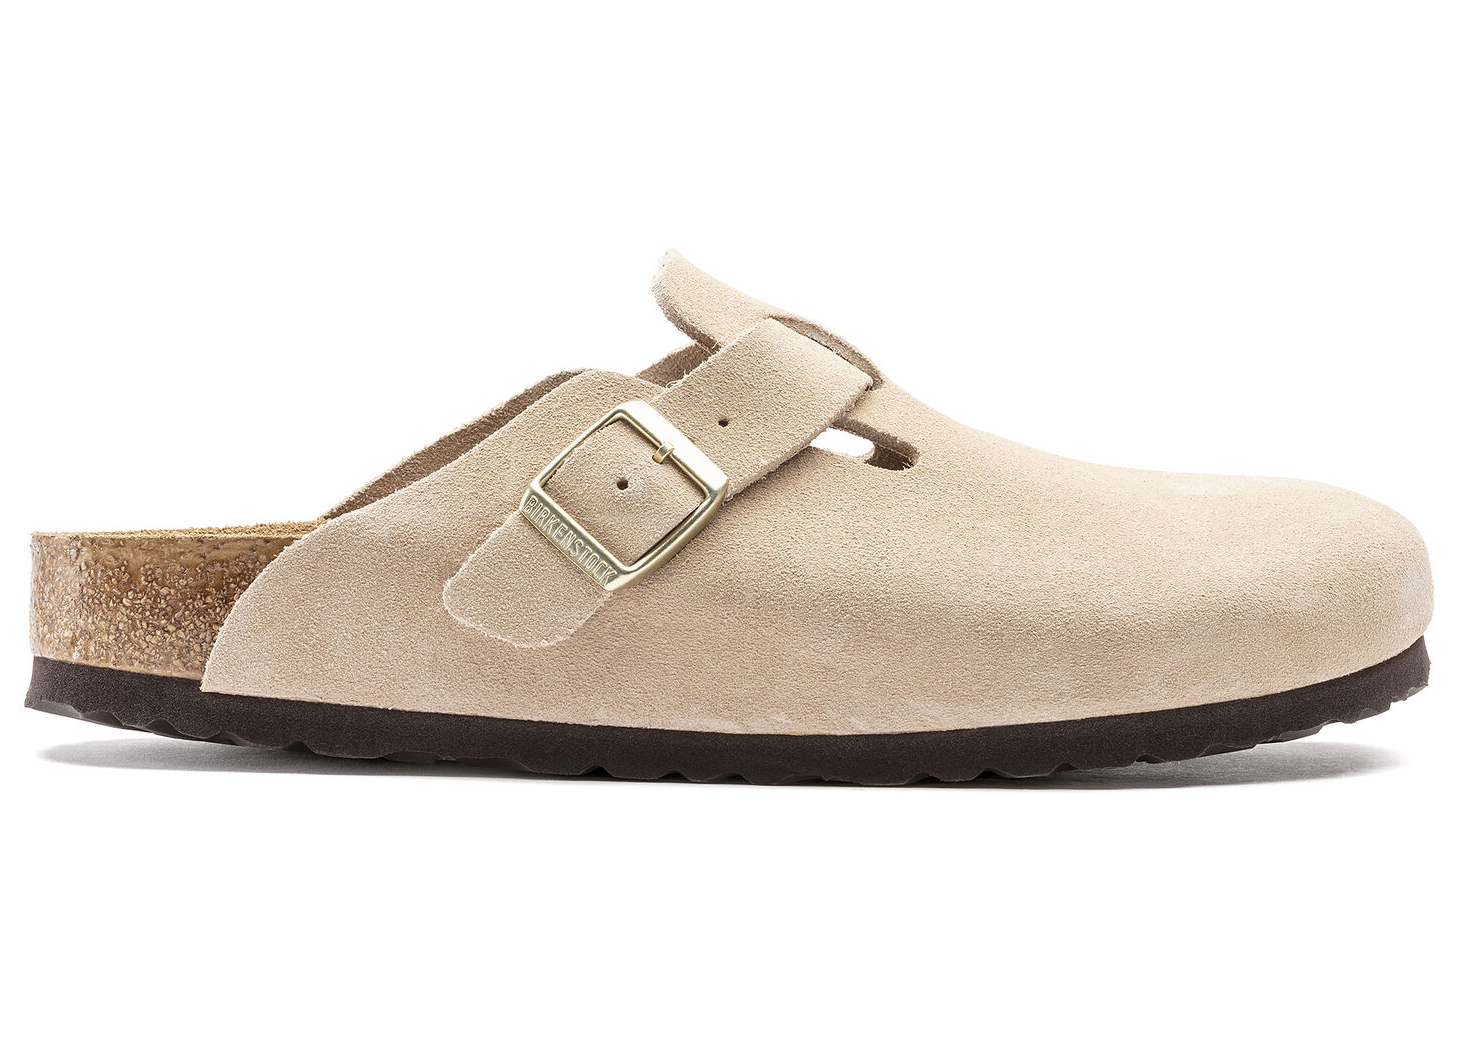 Birkenstock Arizona Soft Footbed Leather Sandal - 9960206 | HSN